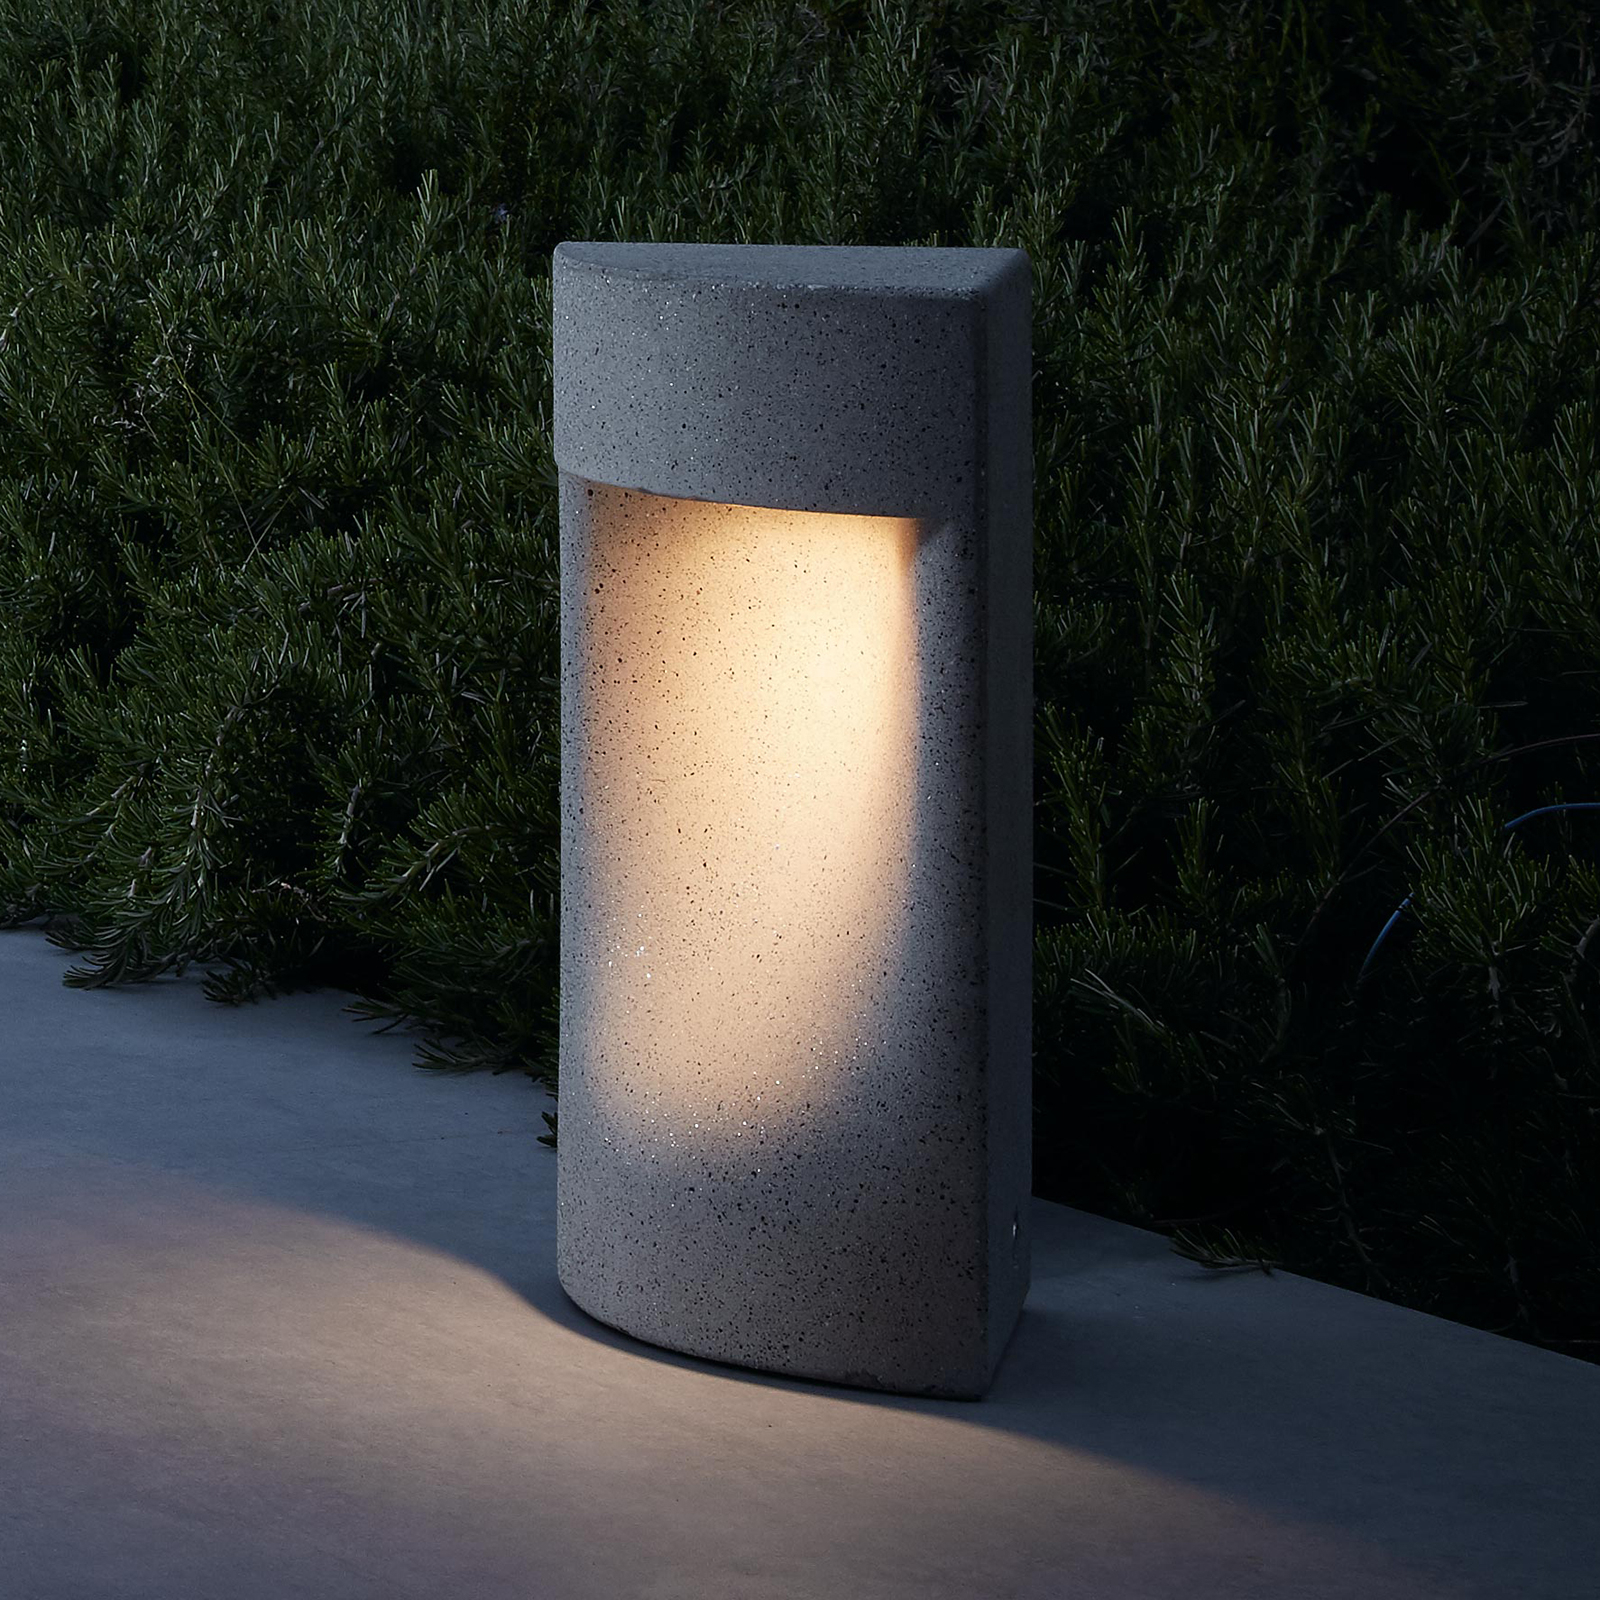 Bover Moai B/35 LED pedestal light, 35 cm high